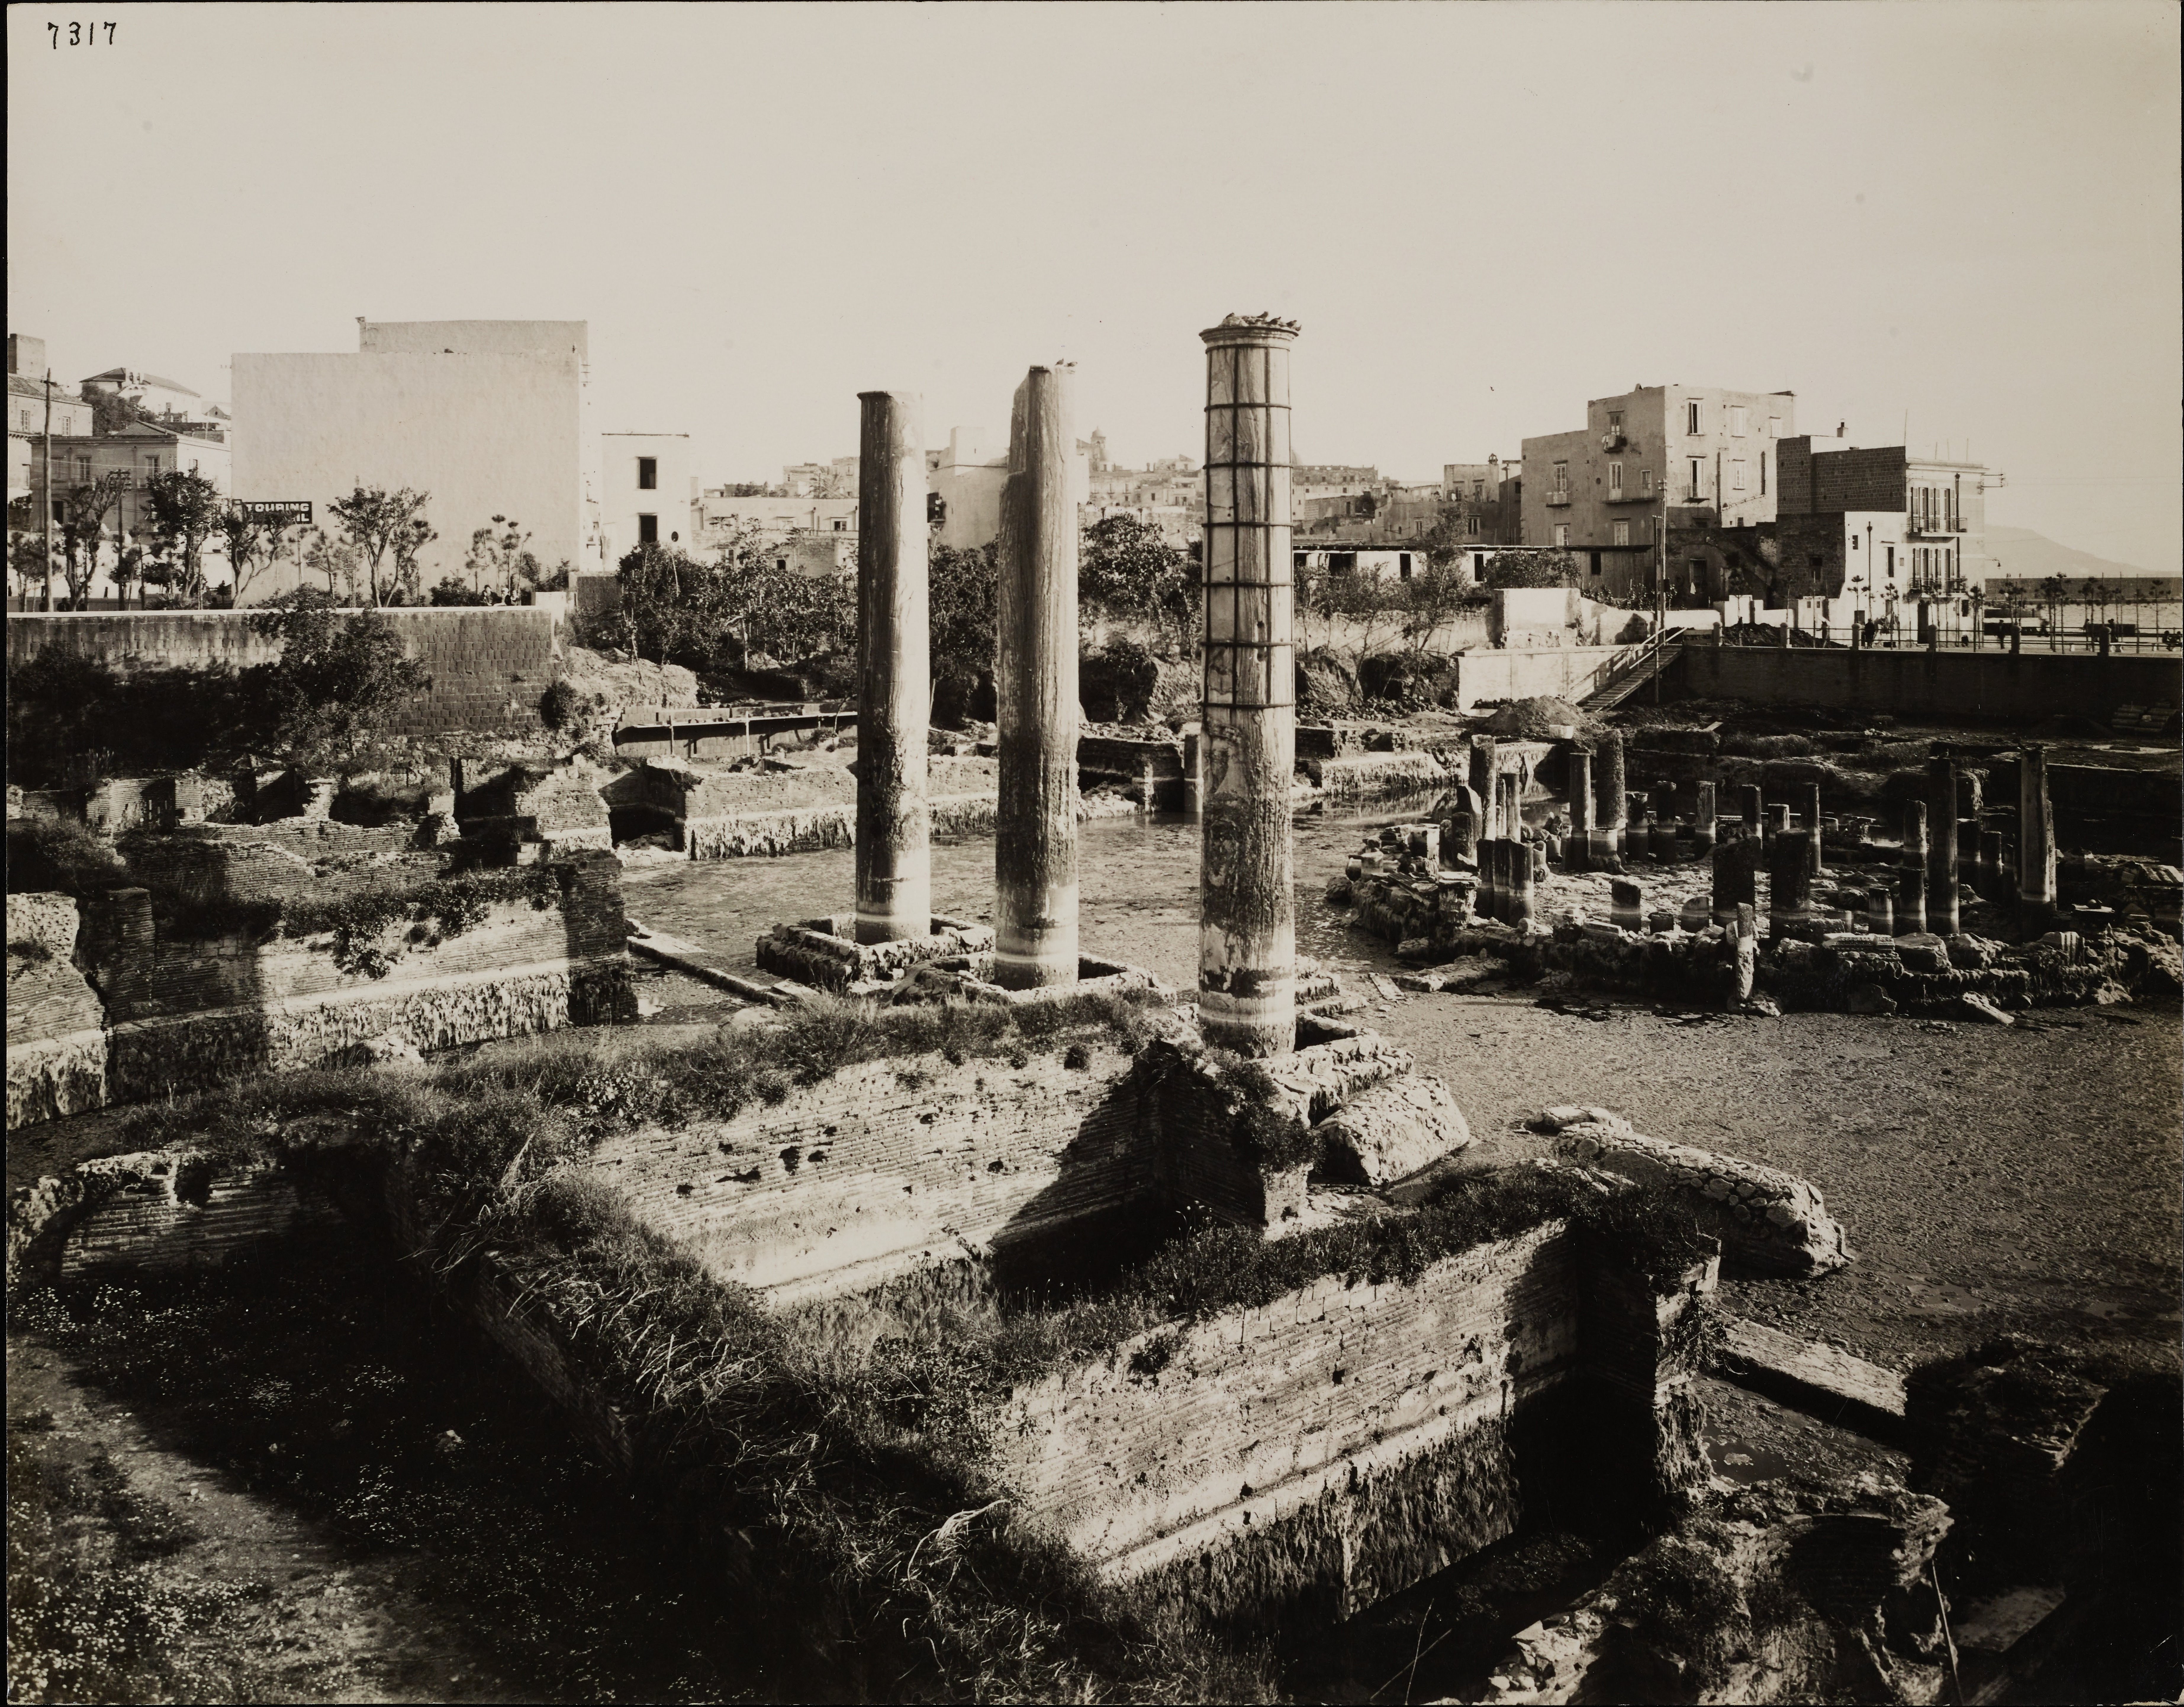 Fotografo non identificato, Pozzuoli - Tempio di Serapide o Macellum, resti di colonne durante i lavori di prosciugamento, 1901-1925, gelatina ai sali d'argento, MPI6014277